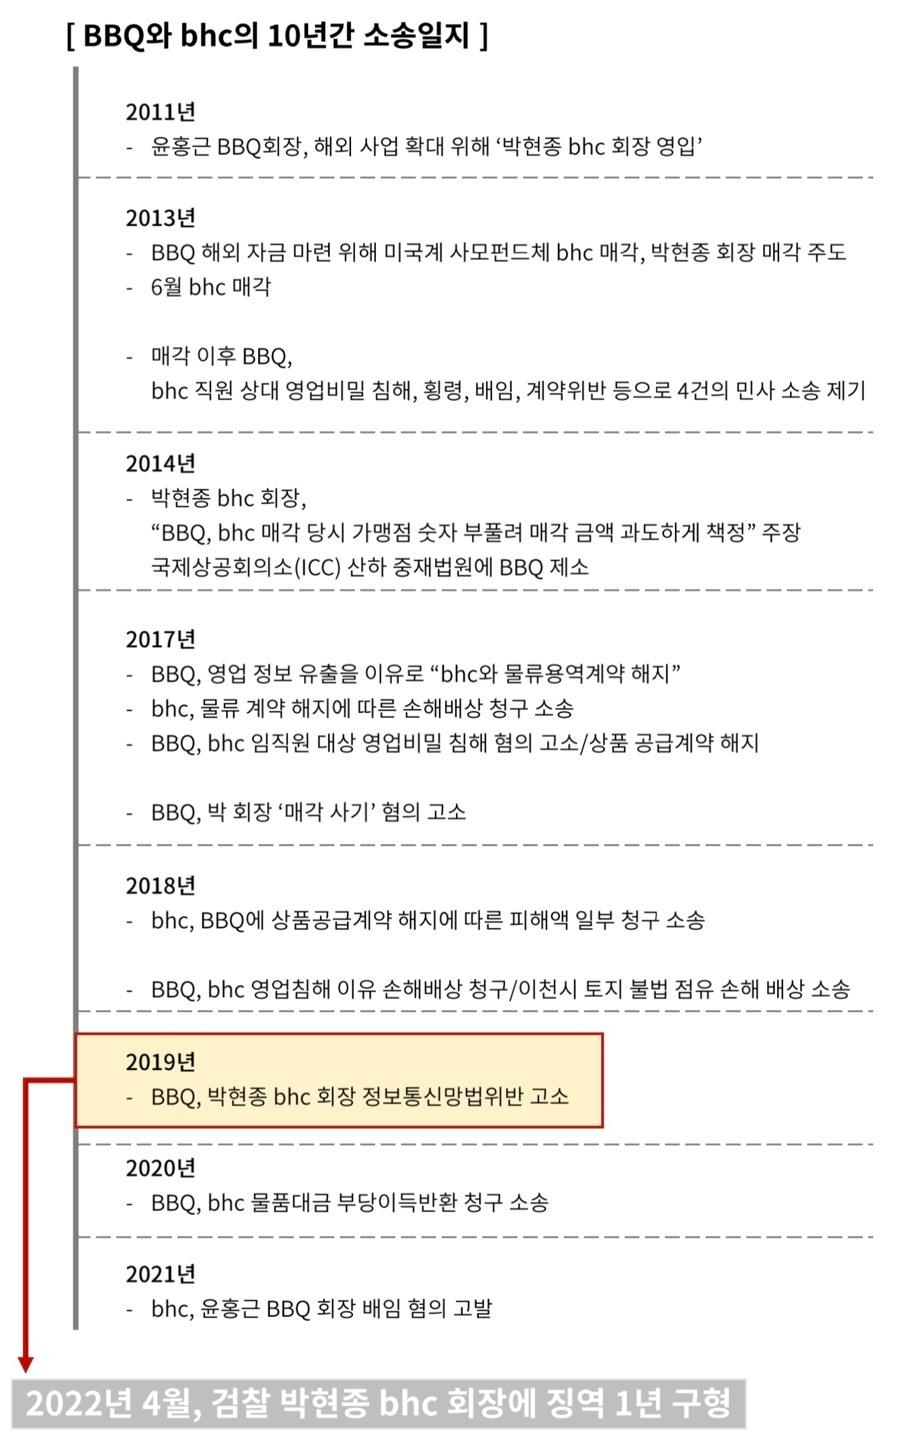 'BBQ 전산망 불법 접속' 박현종 bhc 회장, 집행유예 2년 선고